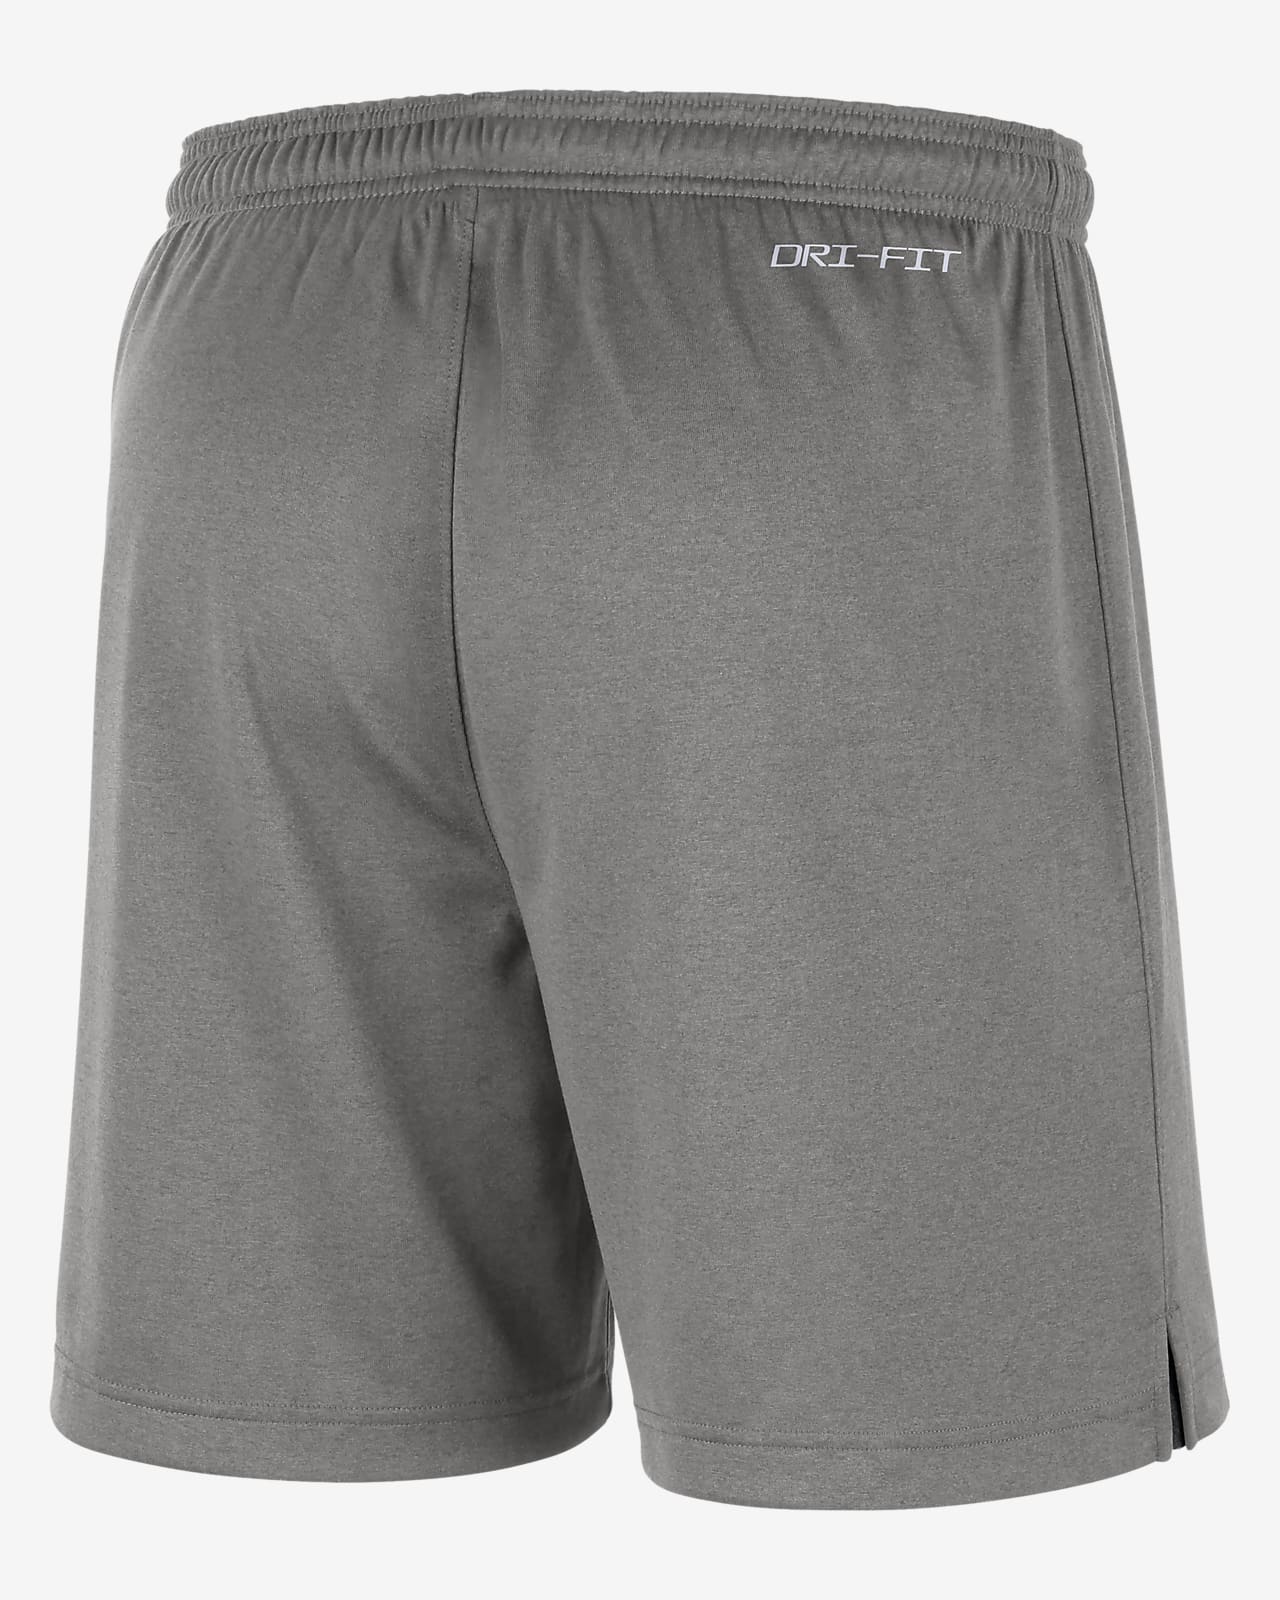 College Dri-FIT (Oregon) Men's Reversible Shorts. Nike.com